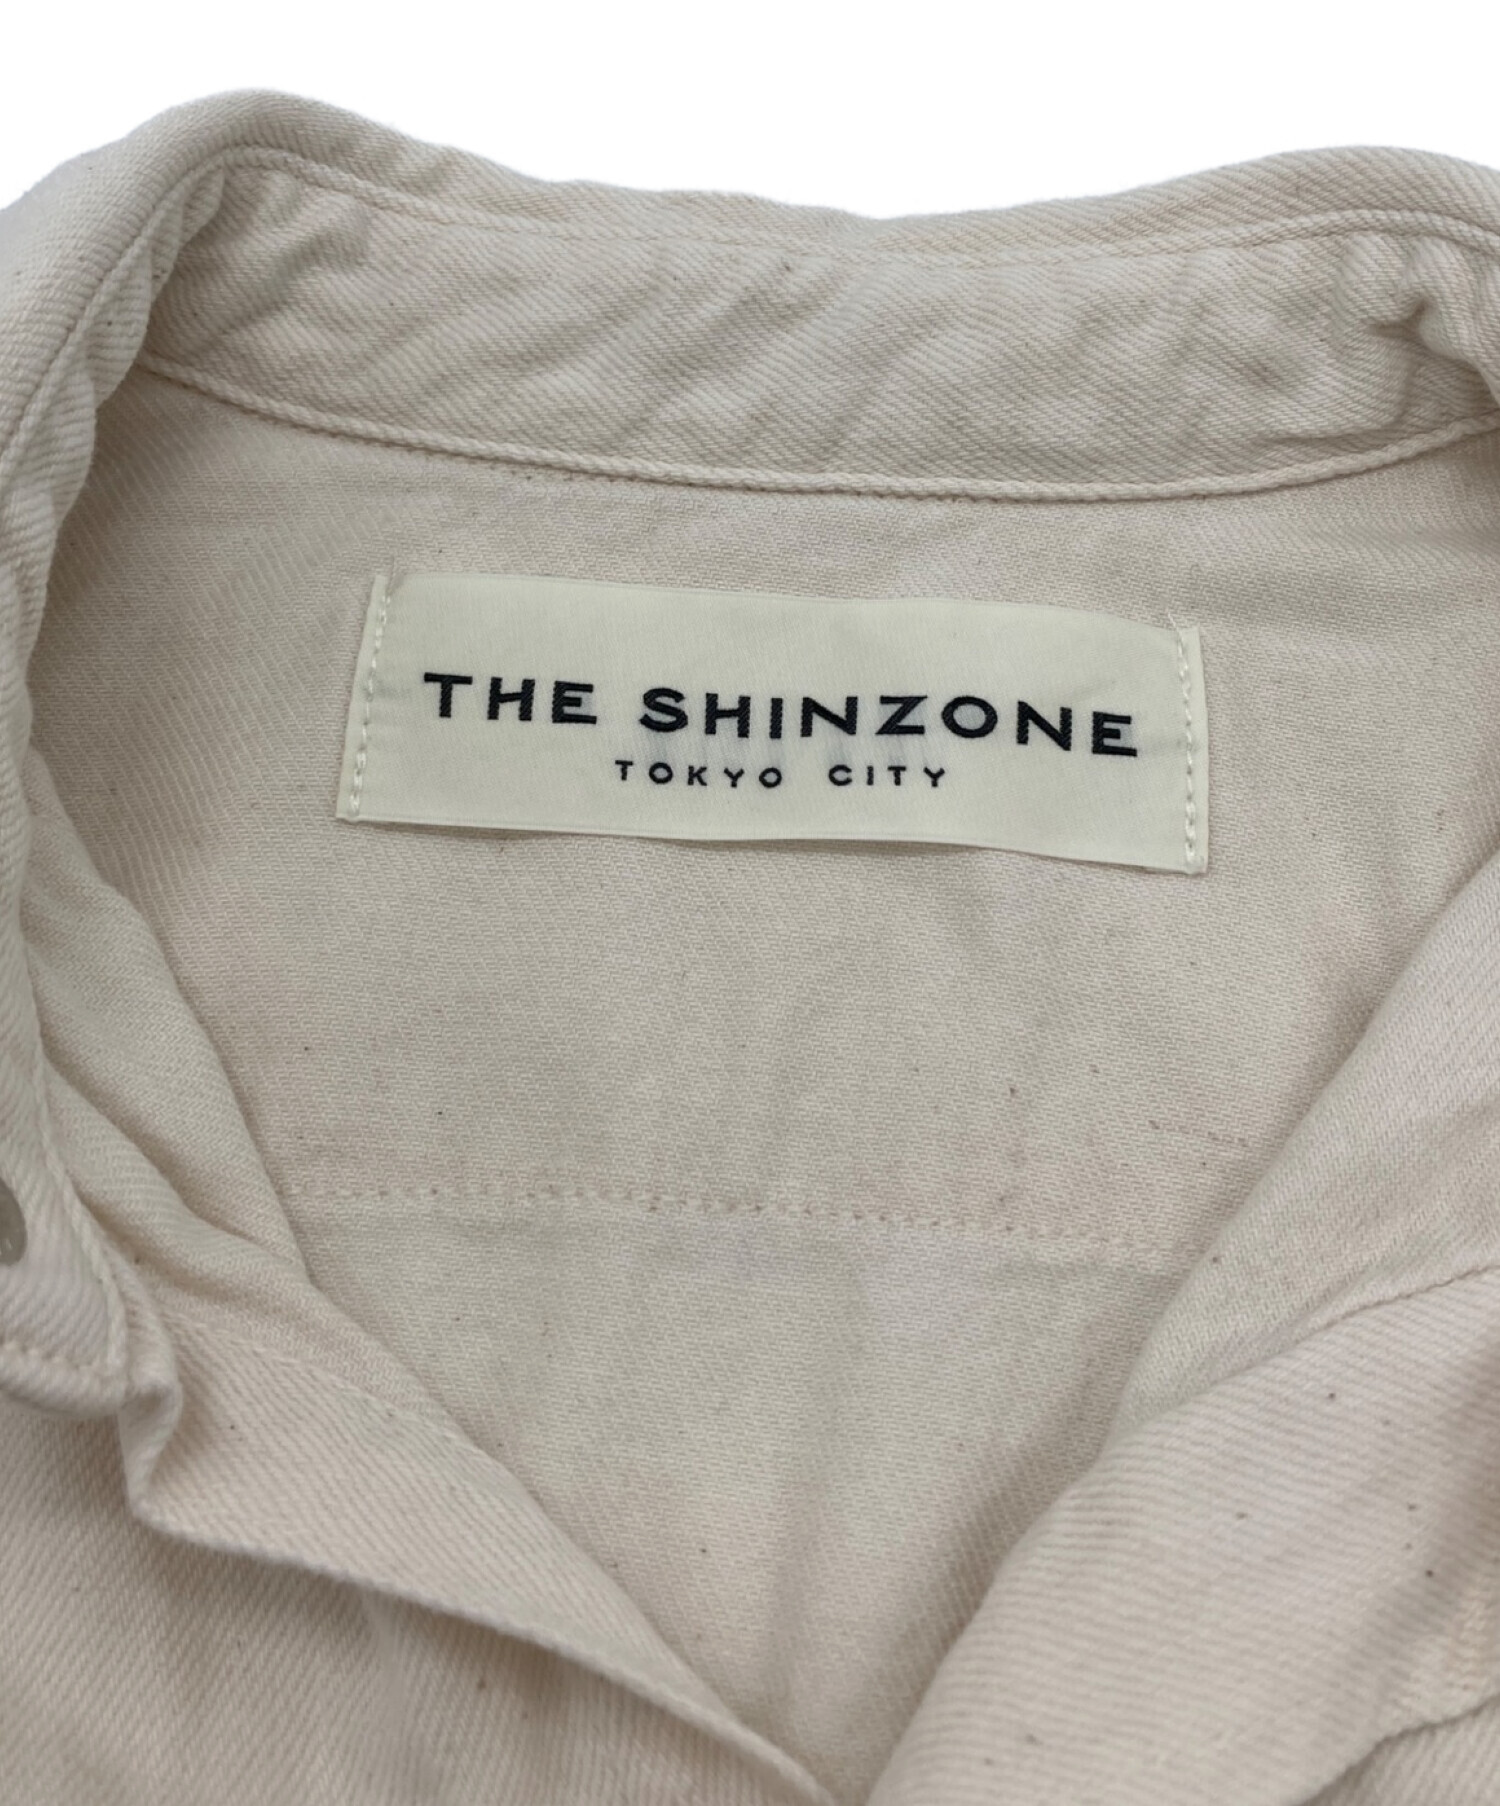 中古・古着通販】THE SHINZONE (ザ シンゾーン) ウエスタンシャツ